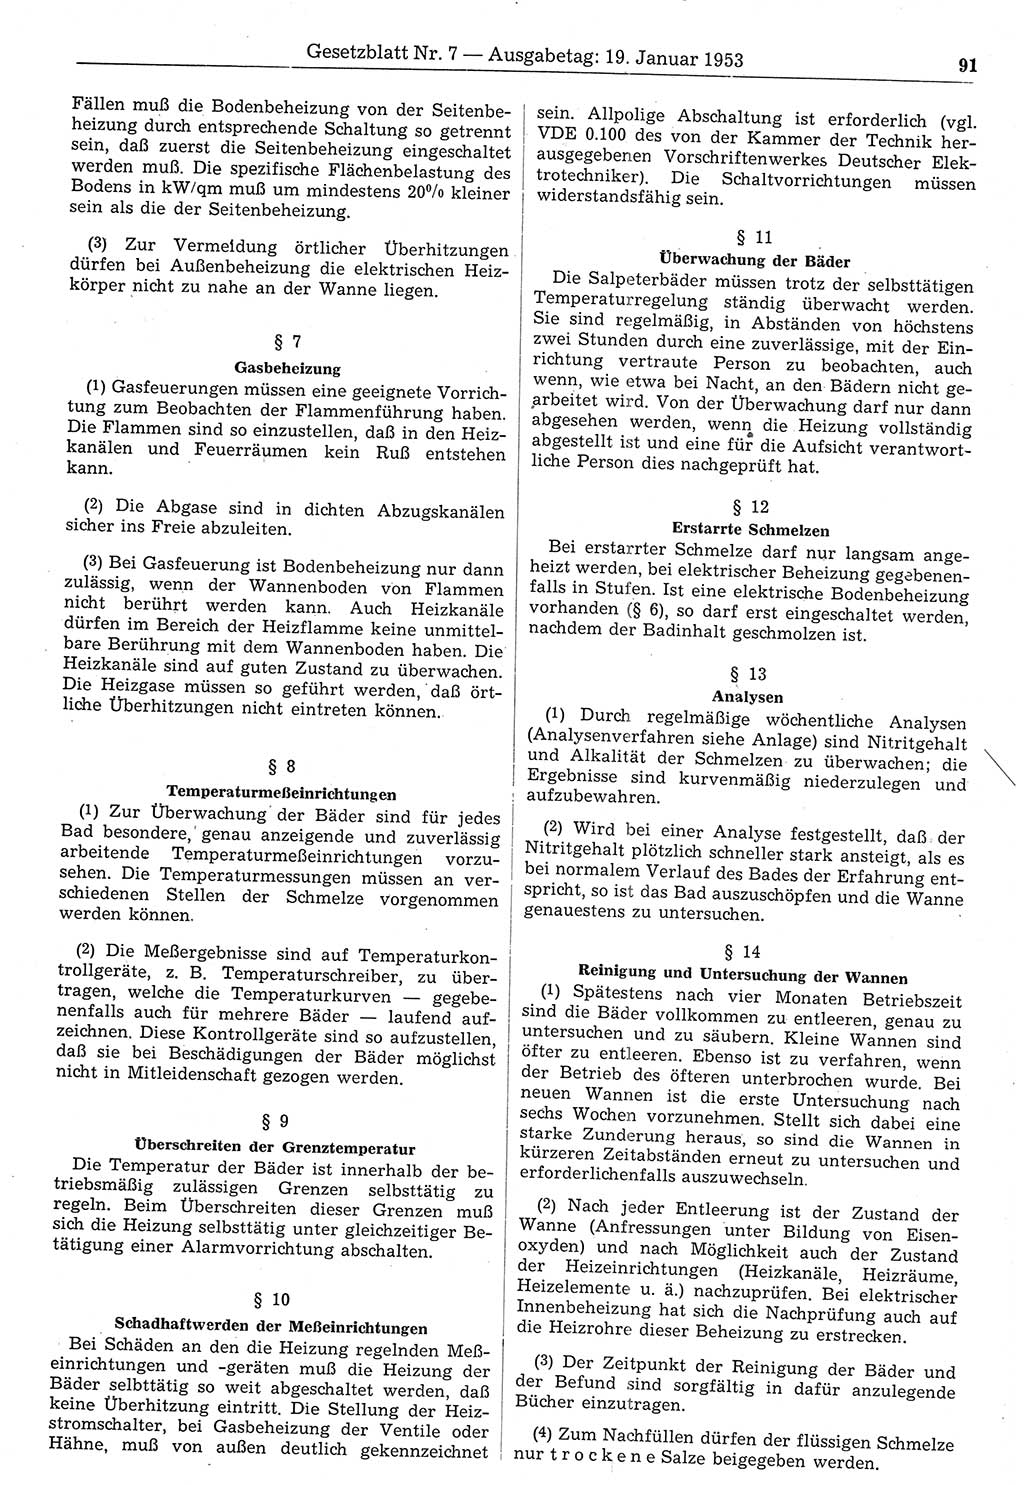 Gesetzblatt (GBl.) der Deutschen Demokratischen Republik (DDR) 1953, Seite 91 (GBl. DDR 1953, S. 91)